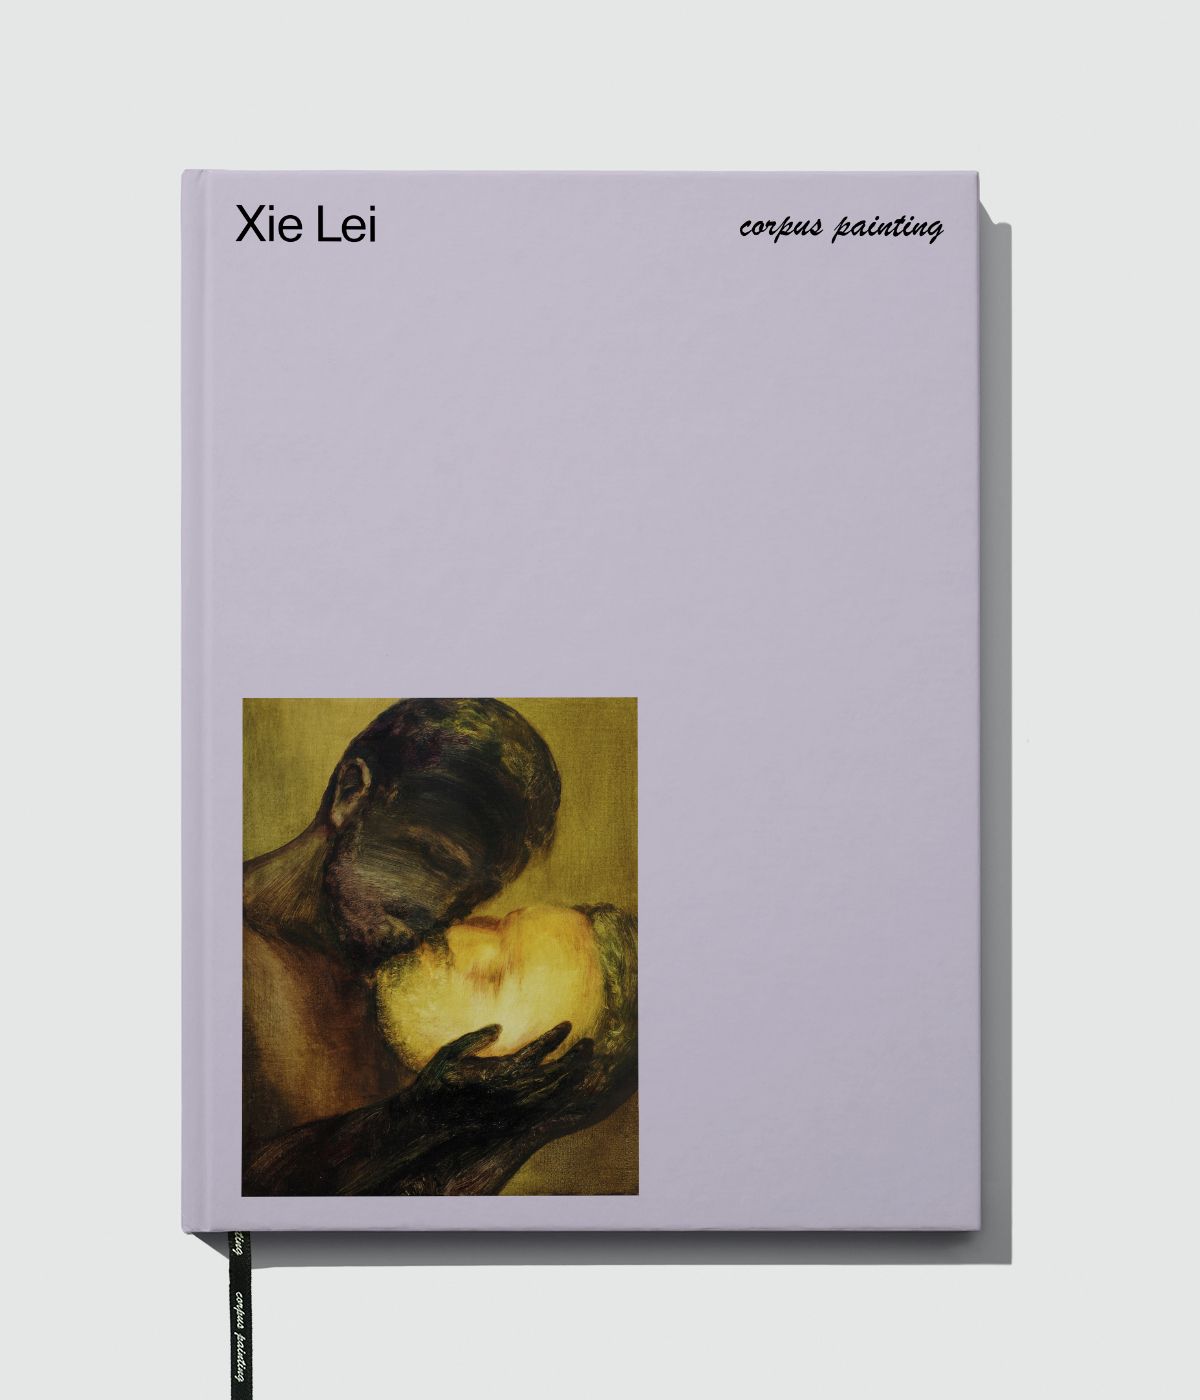 Xie Lei